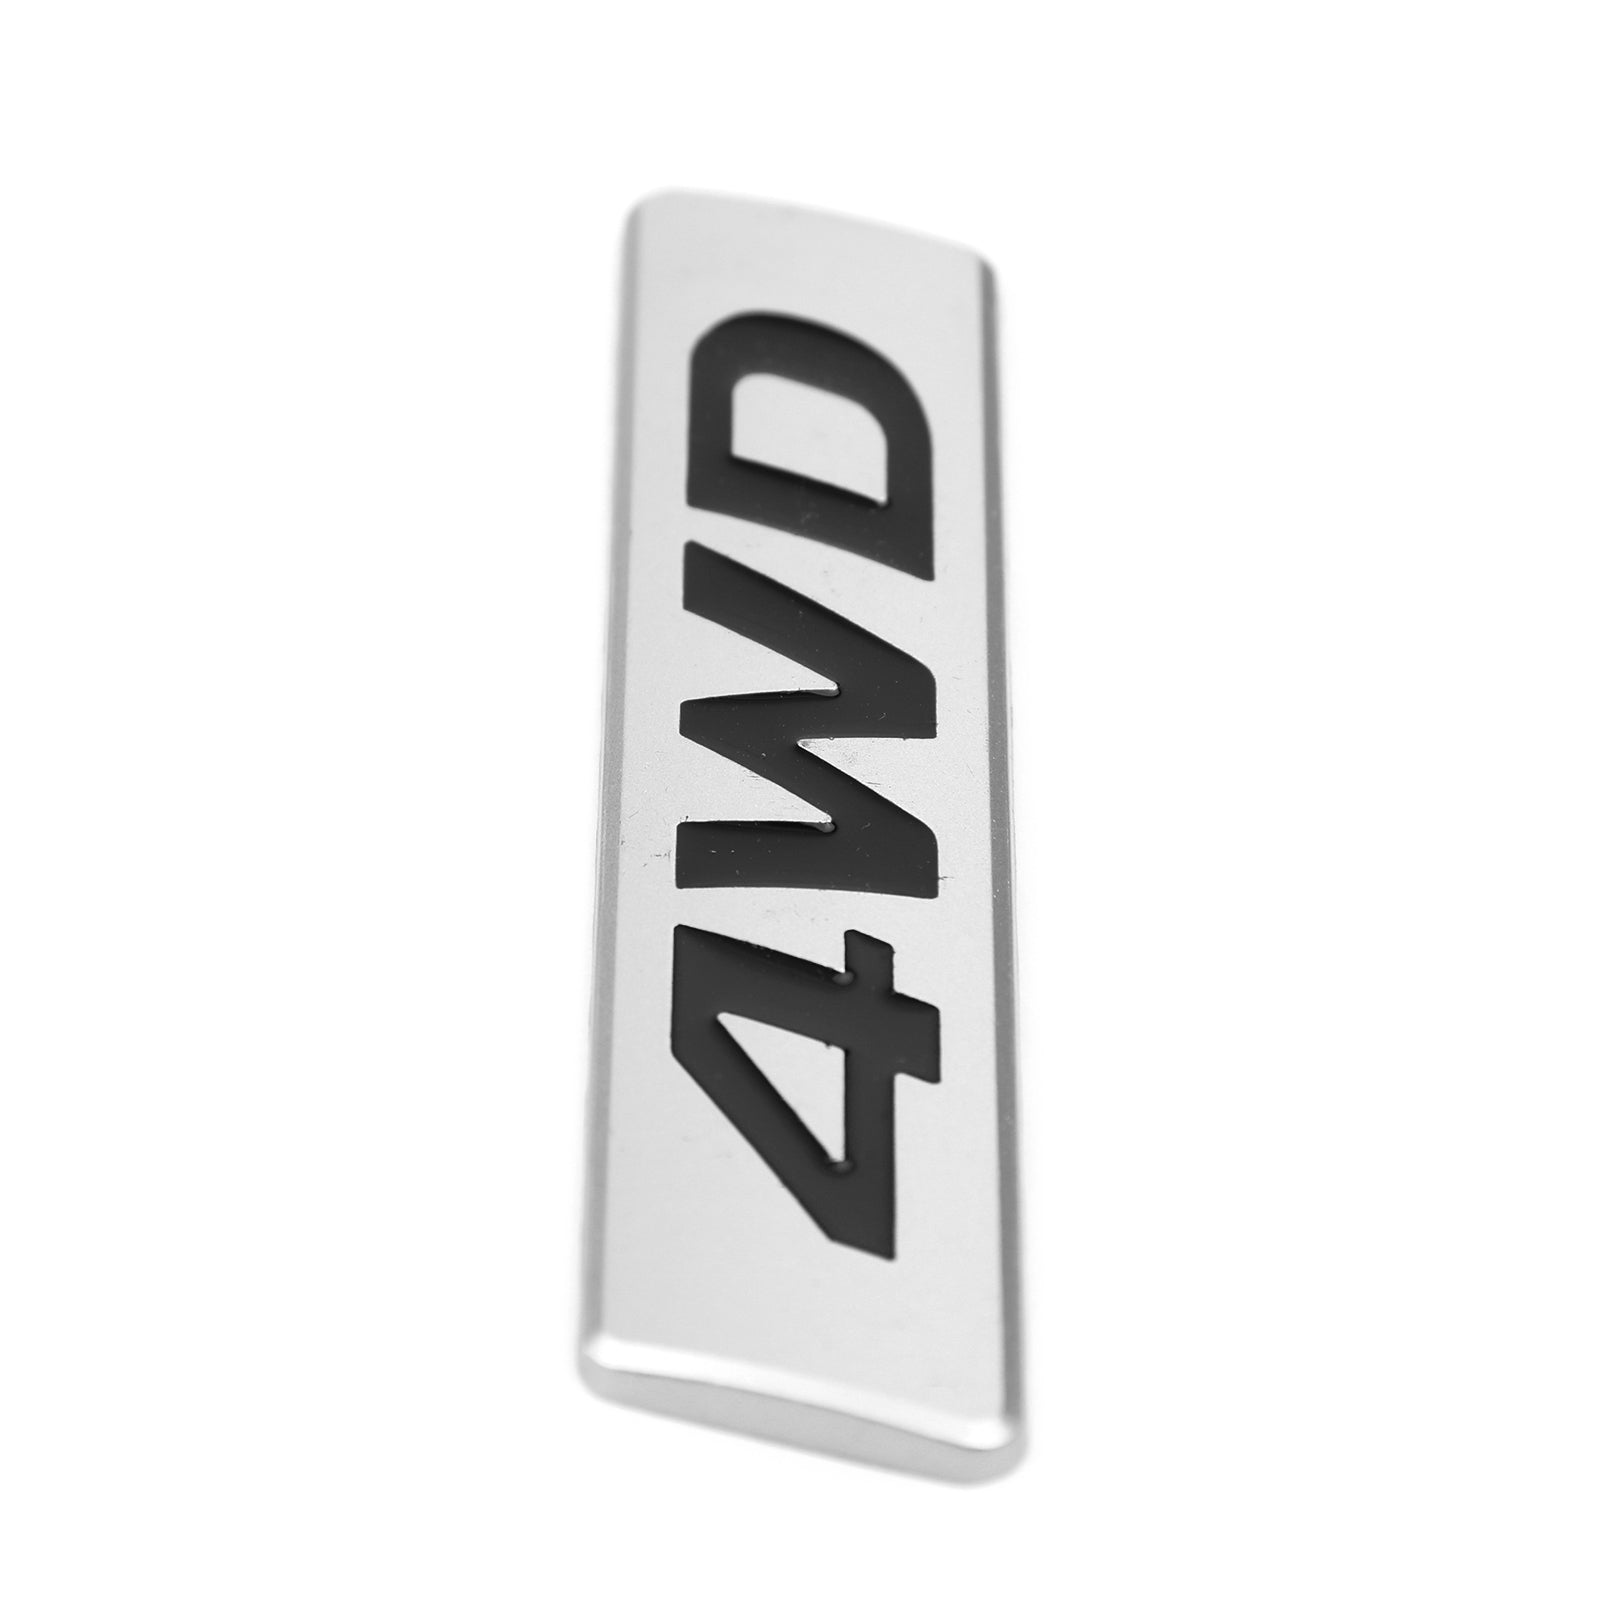 Nouveau métal 4WD emblème voiture garde-boue coffre hayon Badge décalcomanies autocollant 4WD 4X4 SUV générique